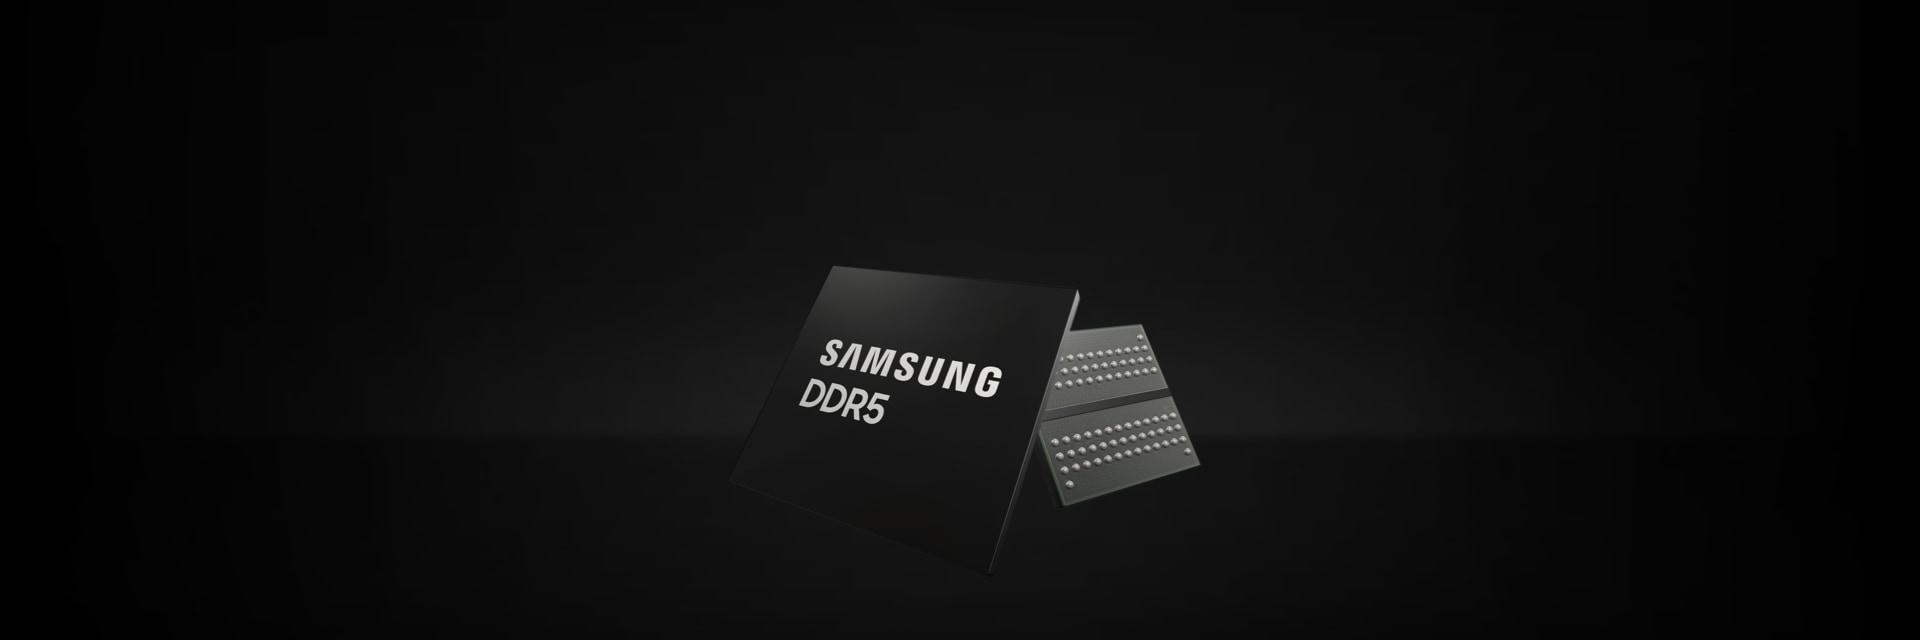 サムスンのDDR5、DDR4、DDR3ソリューション